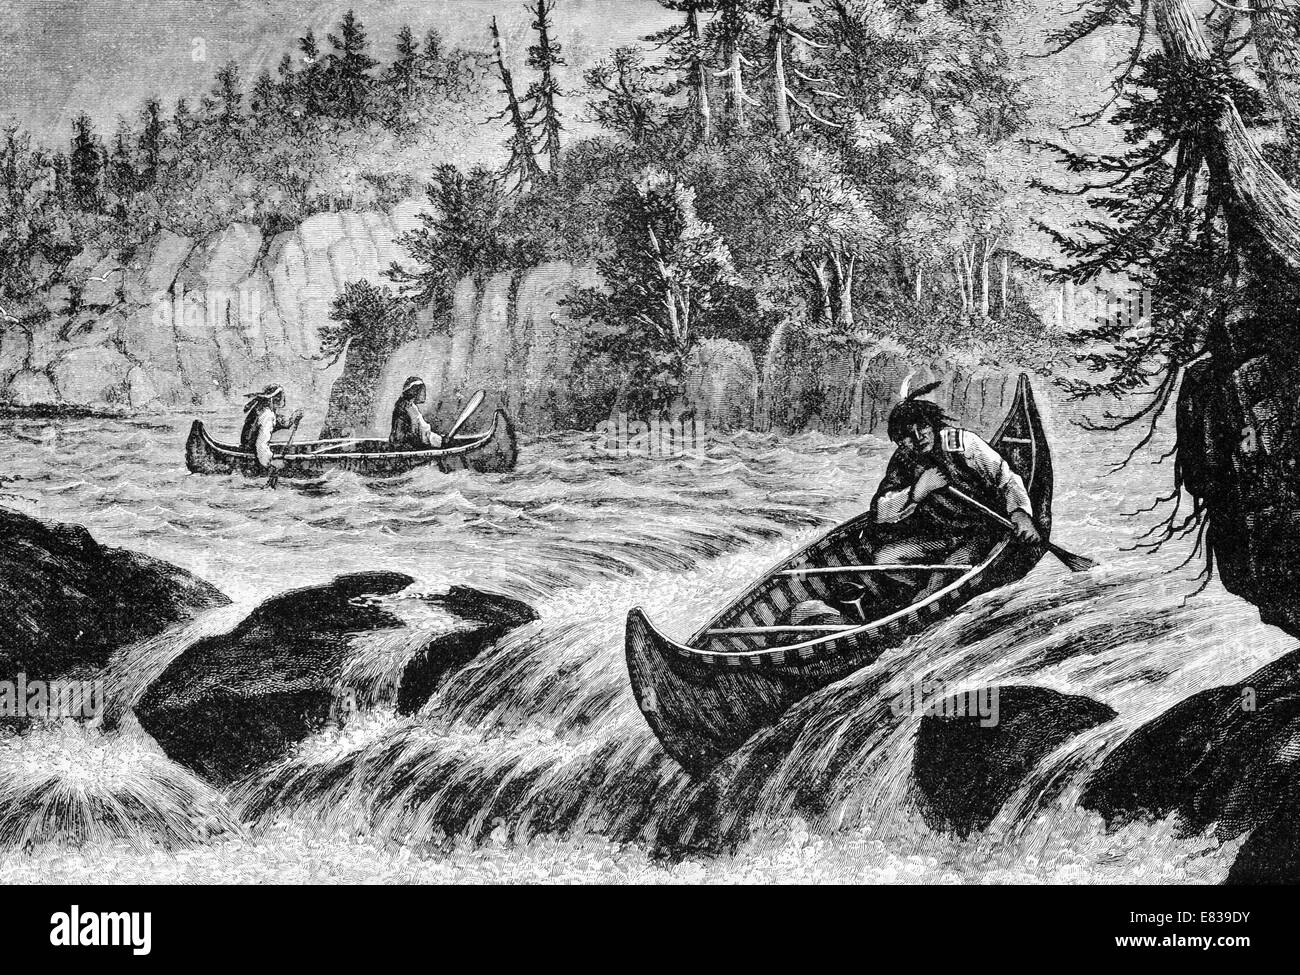 North American Indian piel canoa río disparos rápidos hacia 1885 Foto de stock